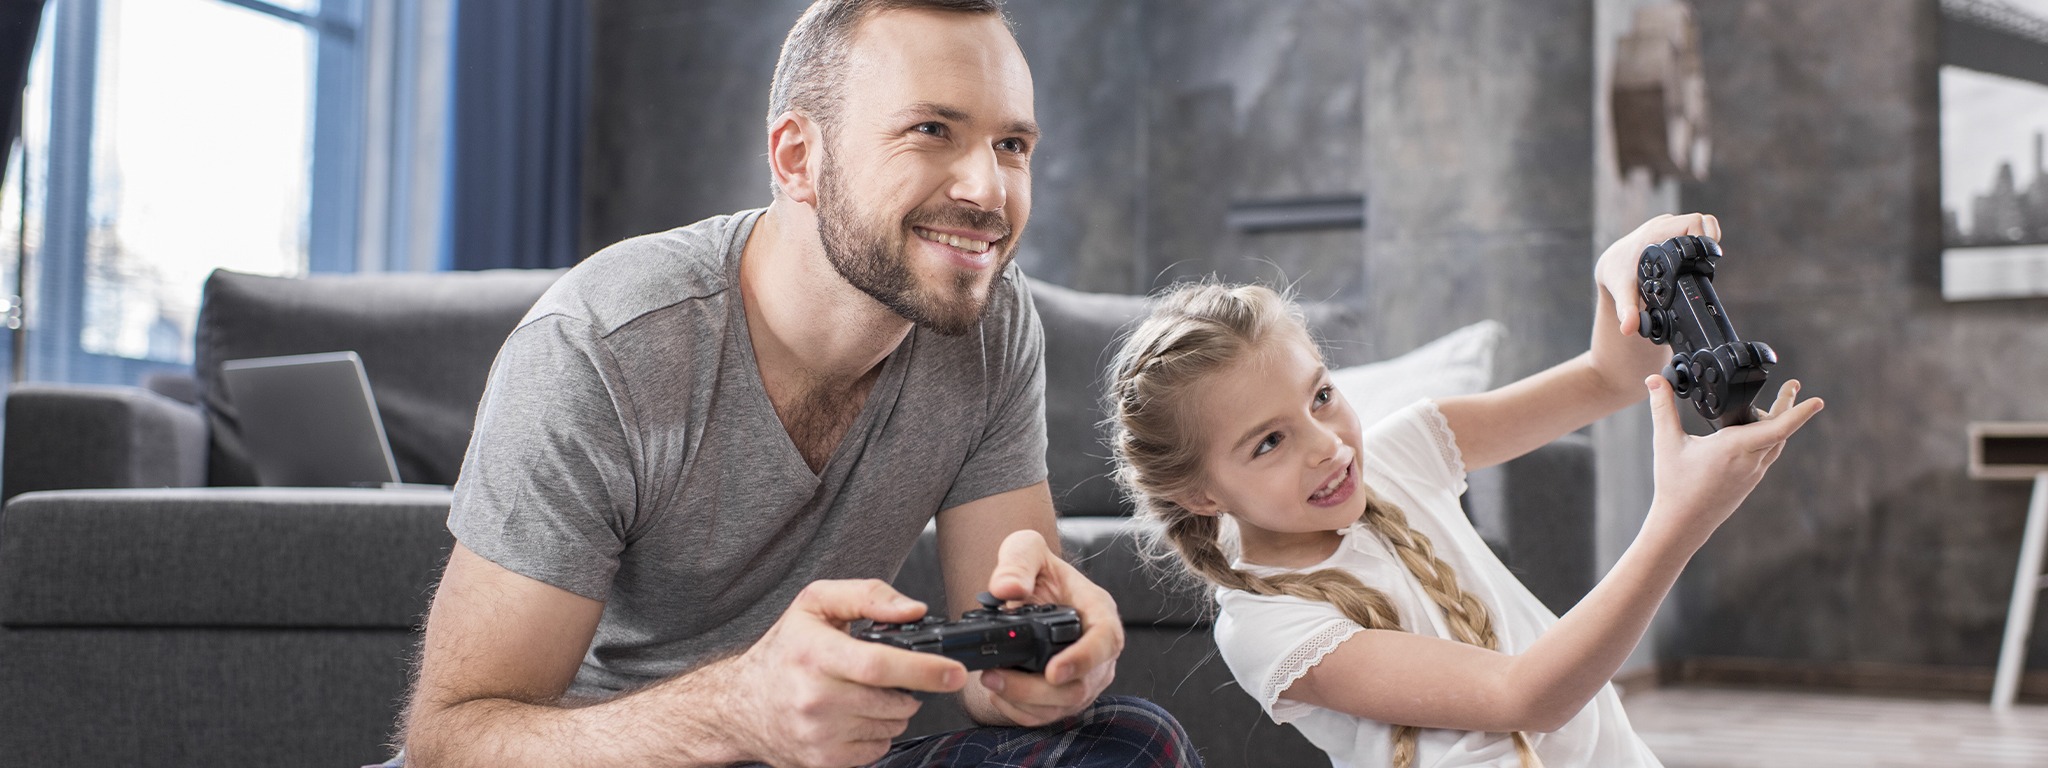 тато і донька сидять на ковдрі в кімнаті та грають у відеогру